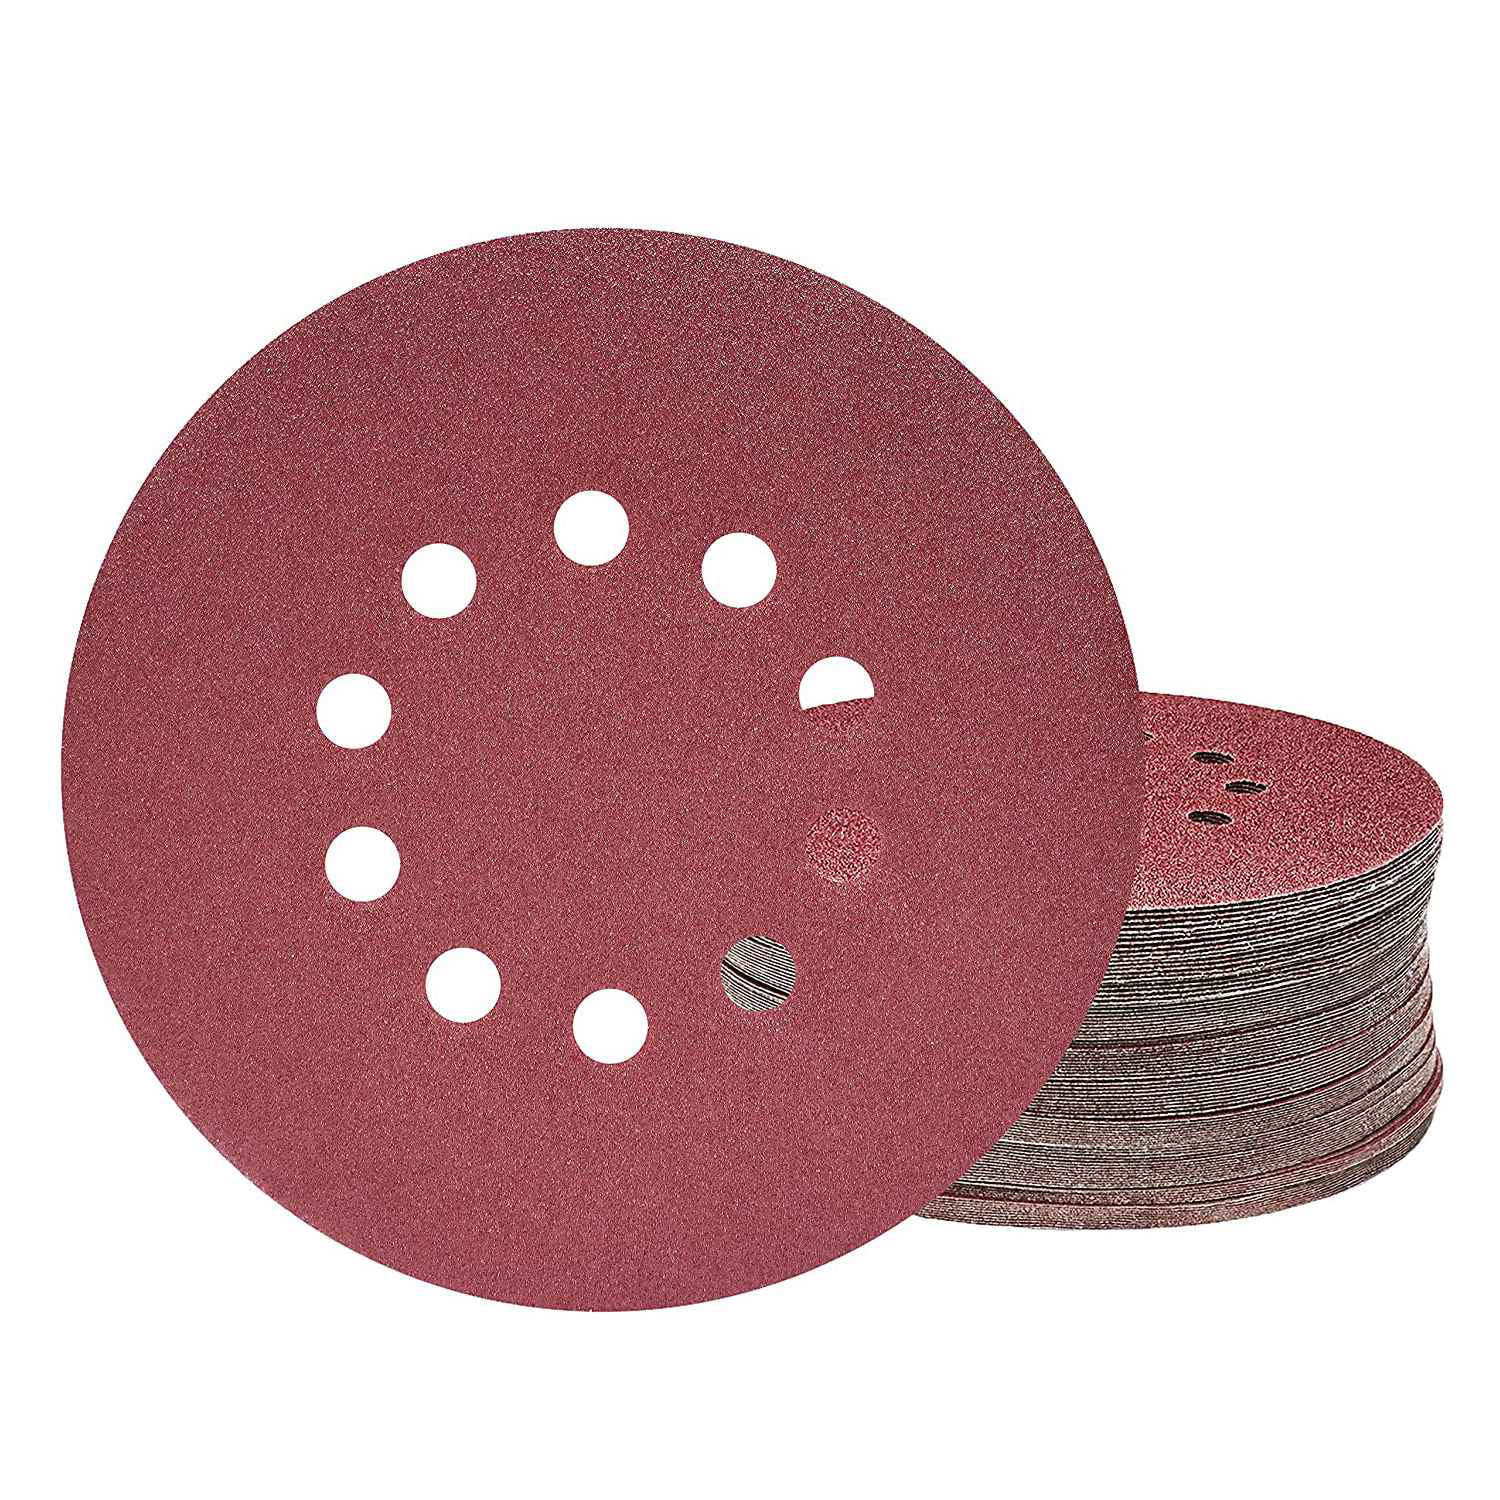 50x Sanding Discs 225mm Sanding Sheet P100 Drywall Sander Sandpaper 